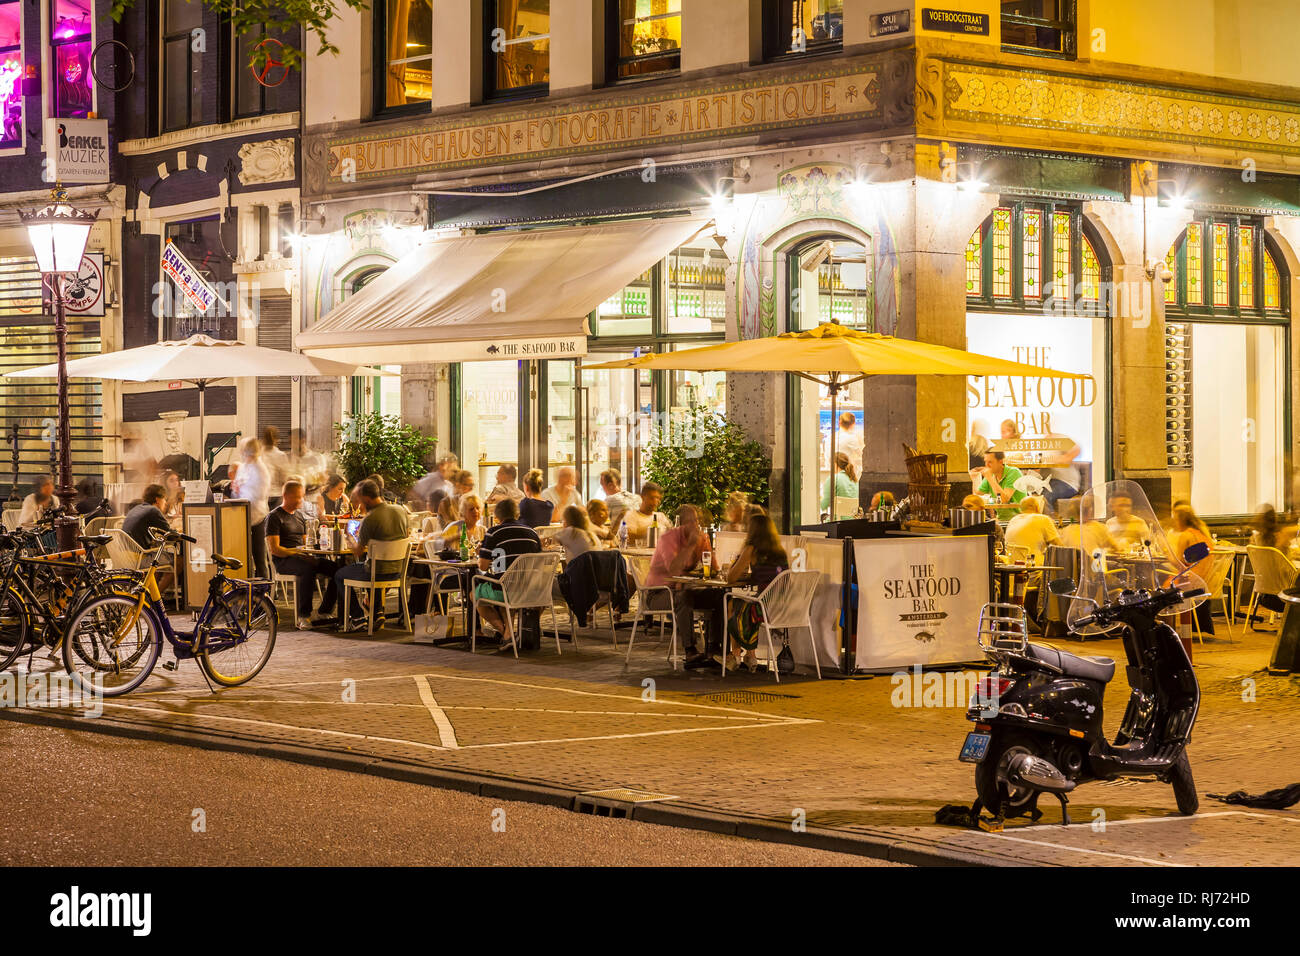 Niederlande, Amsterdam, Spui, Platz in der Innenstadt, Restaurant The Seafood Bar, Fischrestaurant Stock Photo